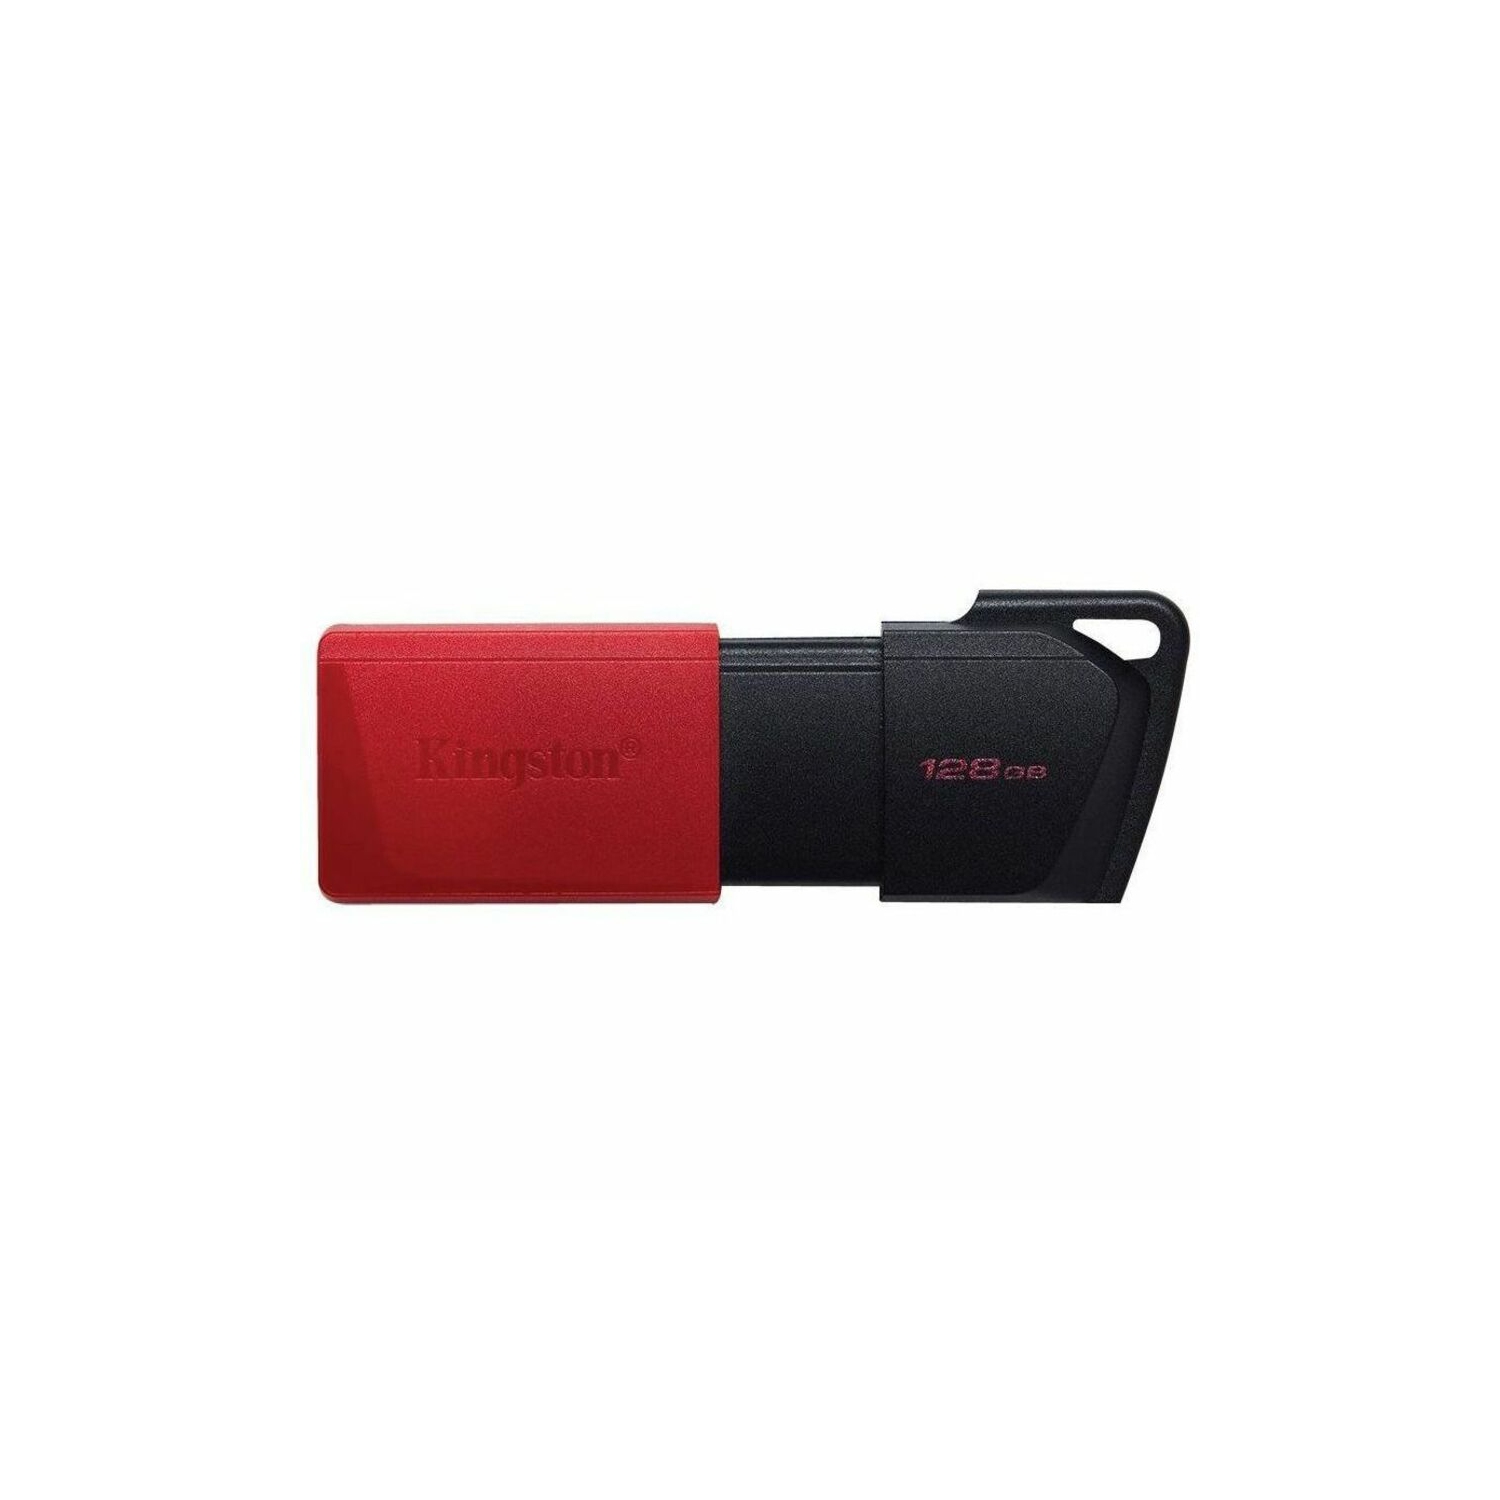 Kingston Digital 128 GB USB 3.2 + USB Flash Drive (DTXM/128GBCR) - Black, Red